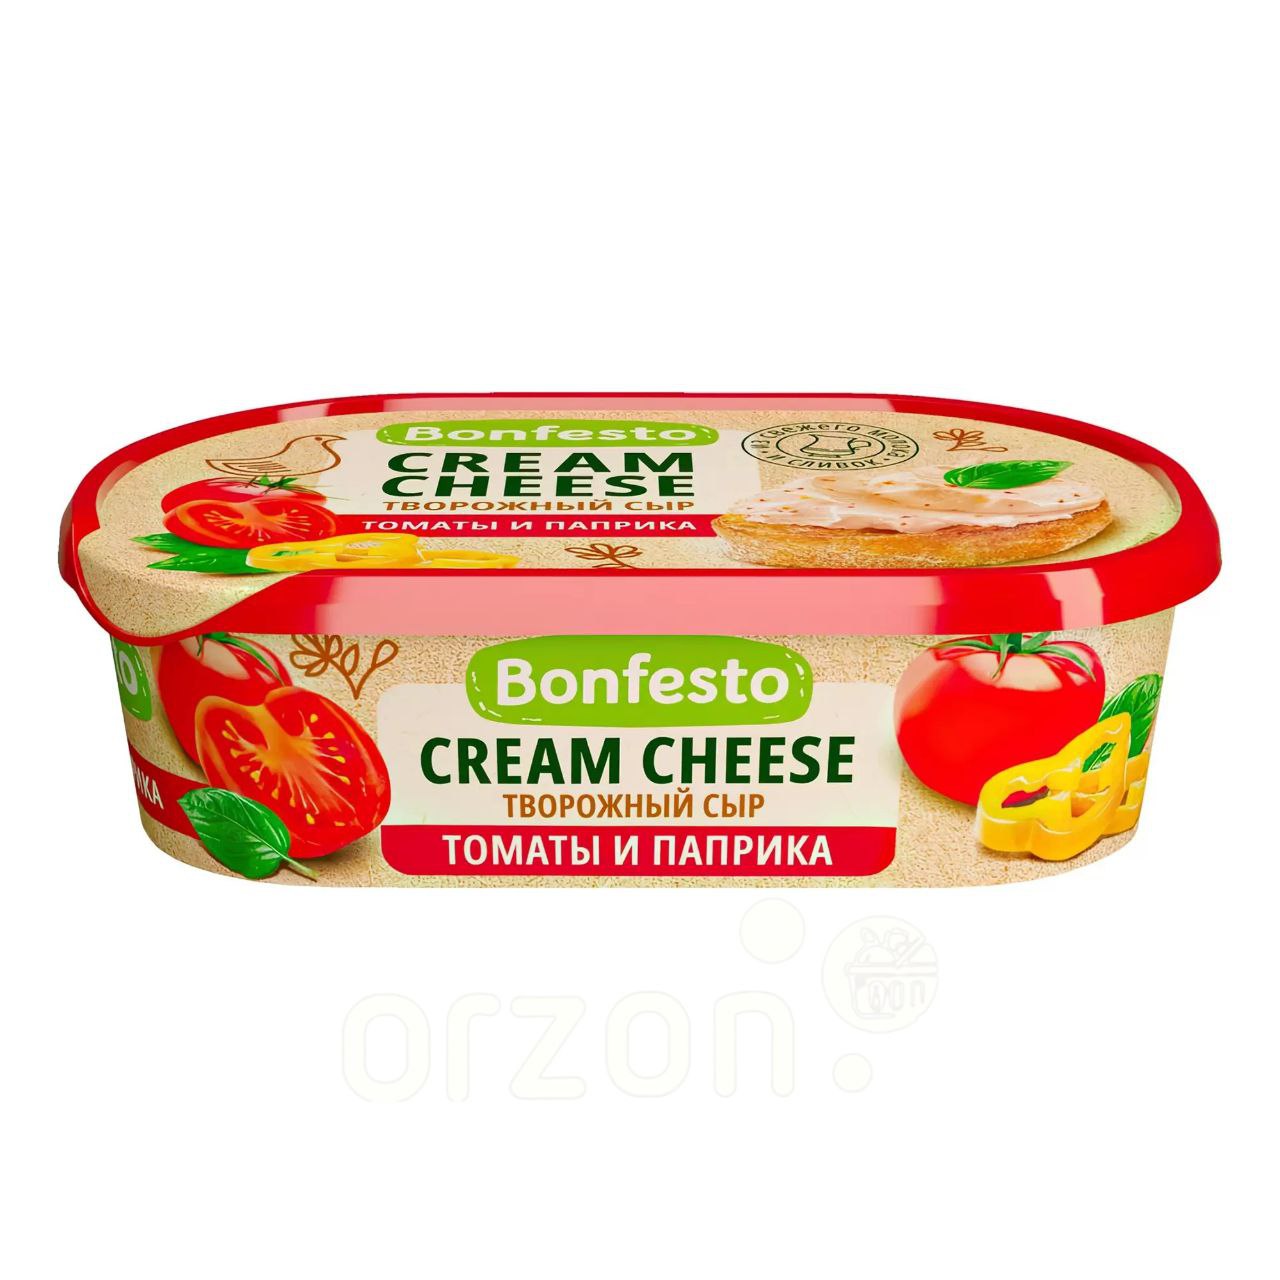 Сыр творожный "Bonfesto" Кремчиз (Томаты и паприка) 65% 140 гр